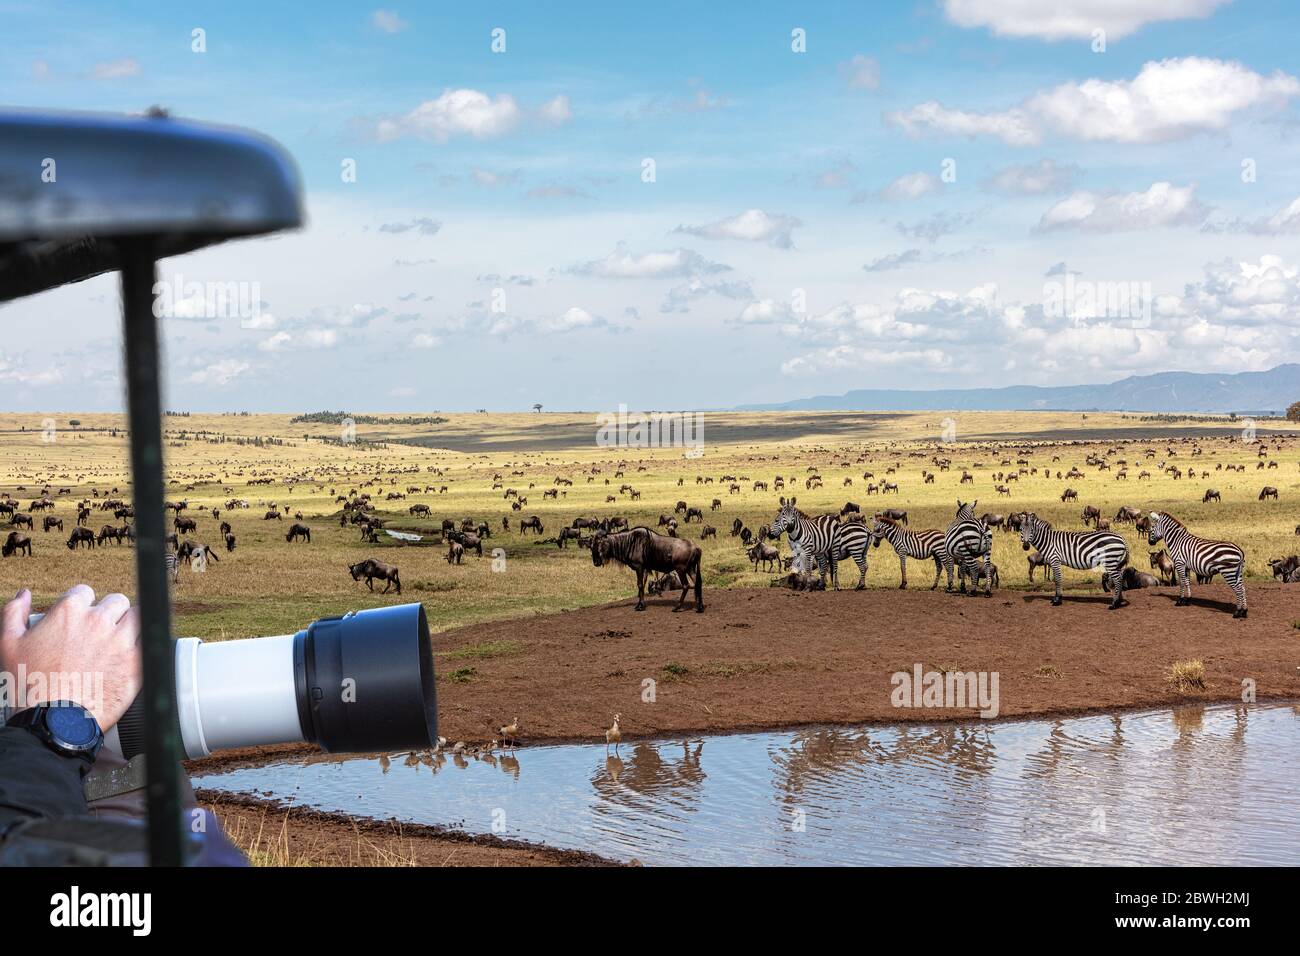 Fotografo di fauna selvatica appeso obiettivo fotocamera fuori di un veicolo safari per fotografare la wildebeest e zebra grande migrazione in Kenya, Africa Foto Stock